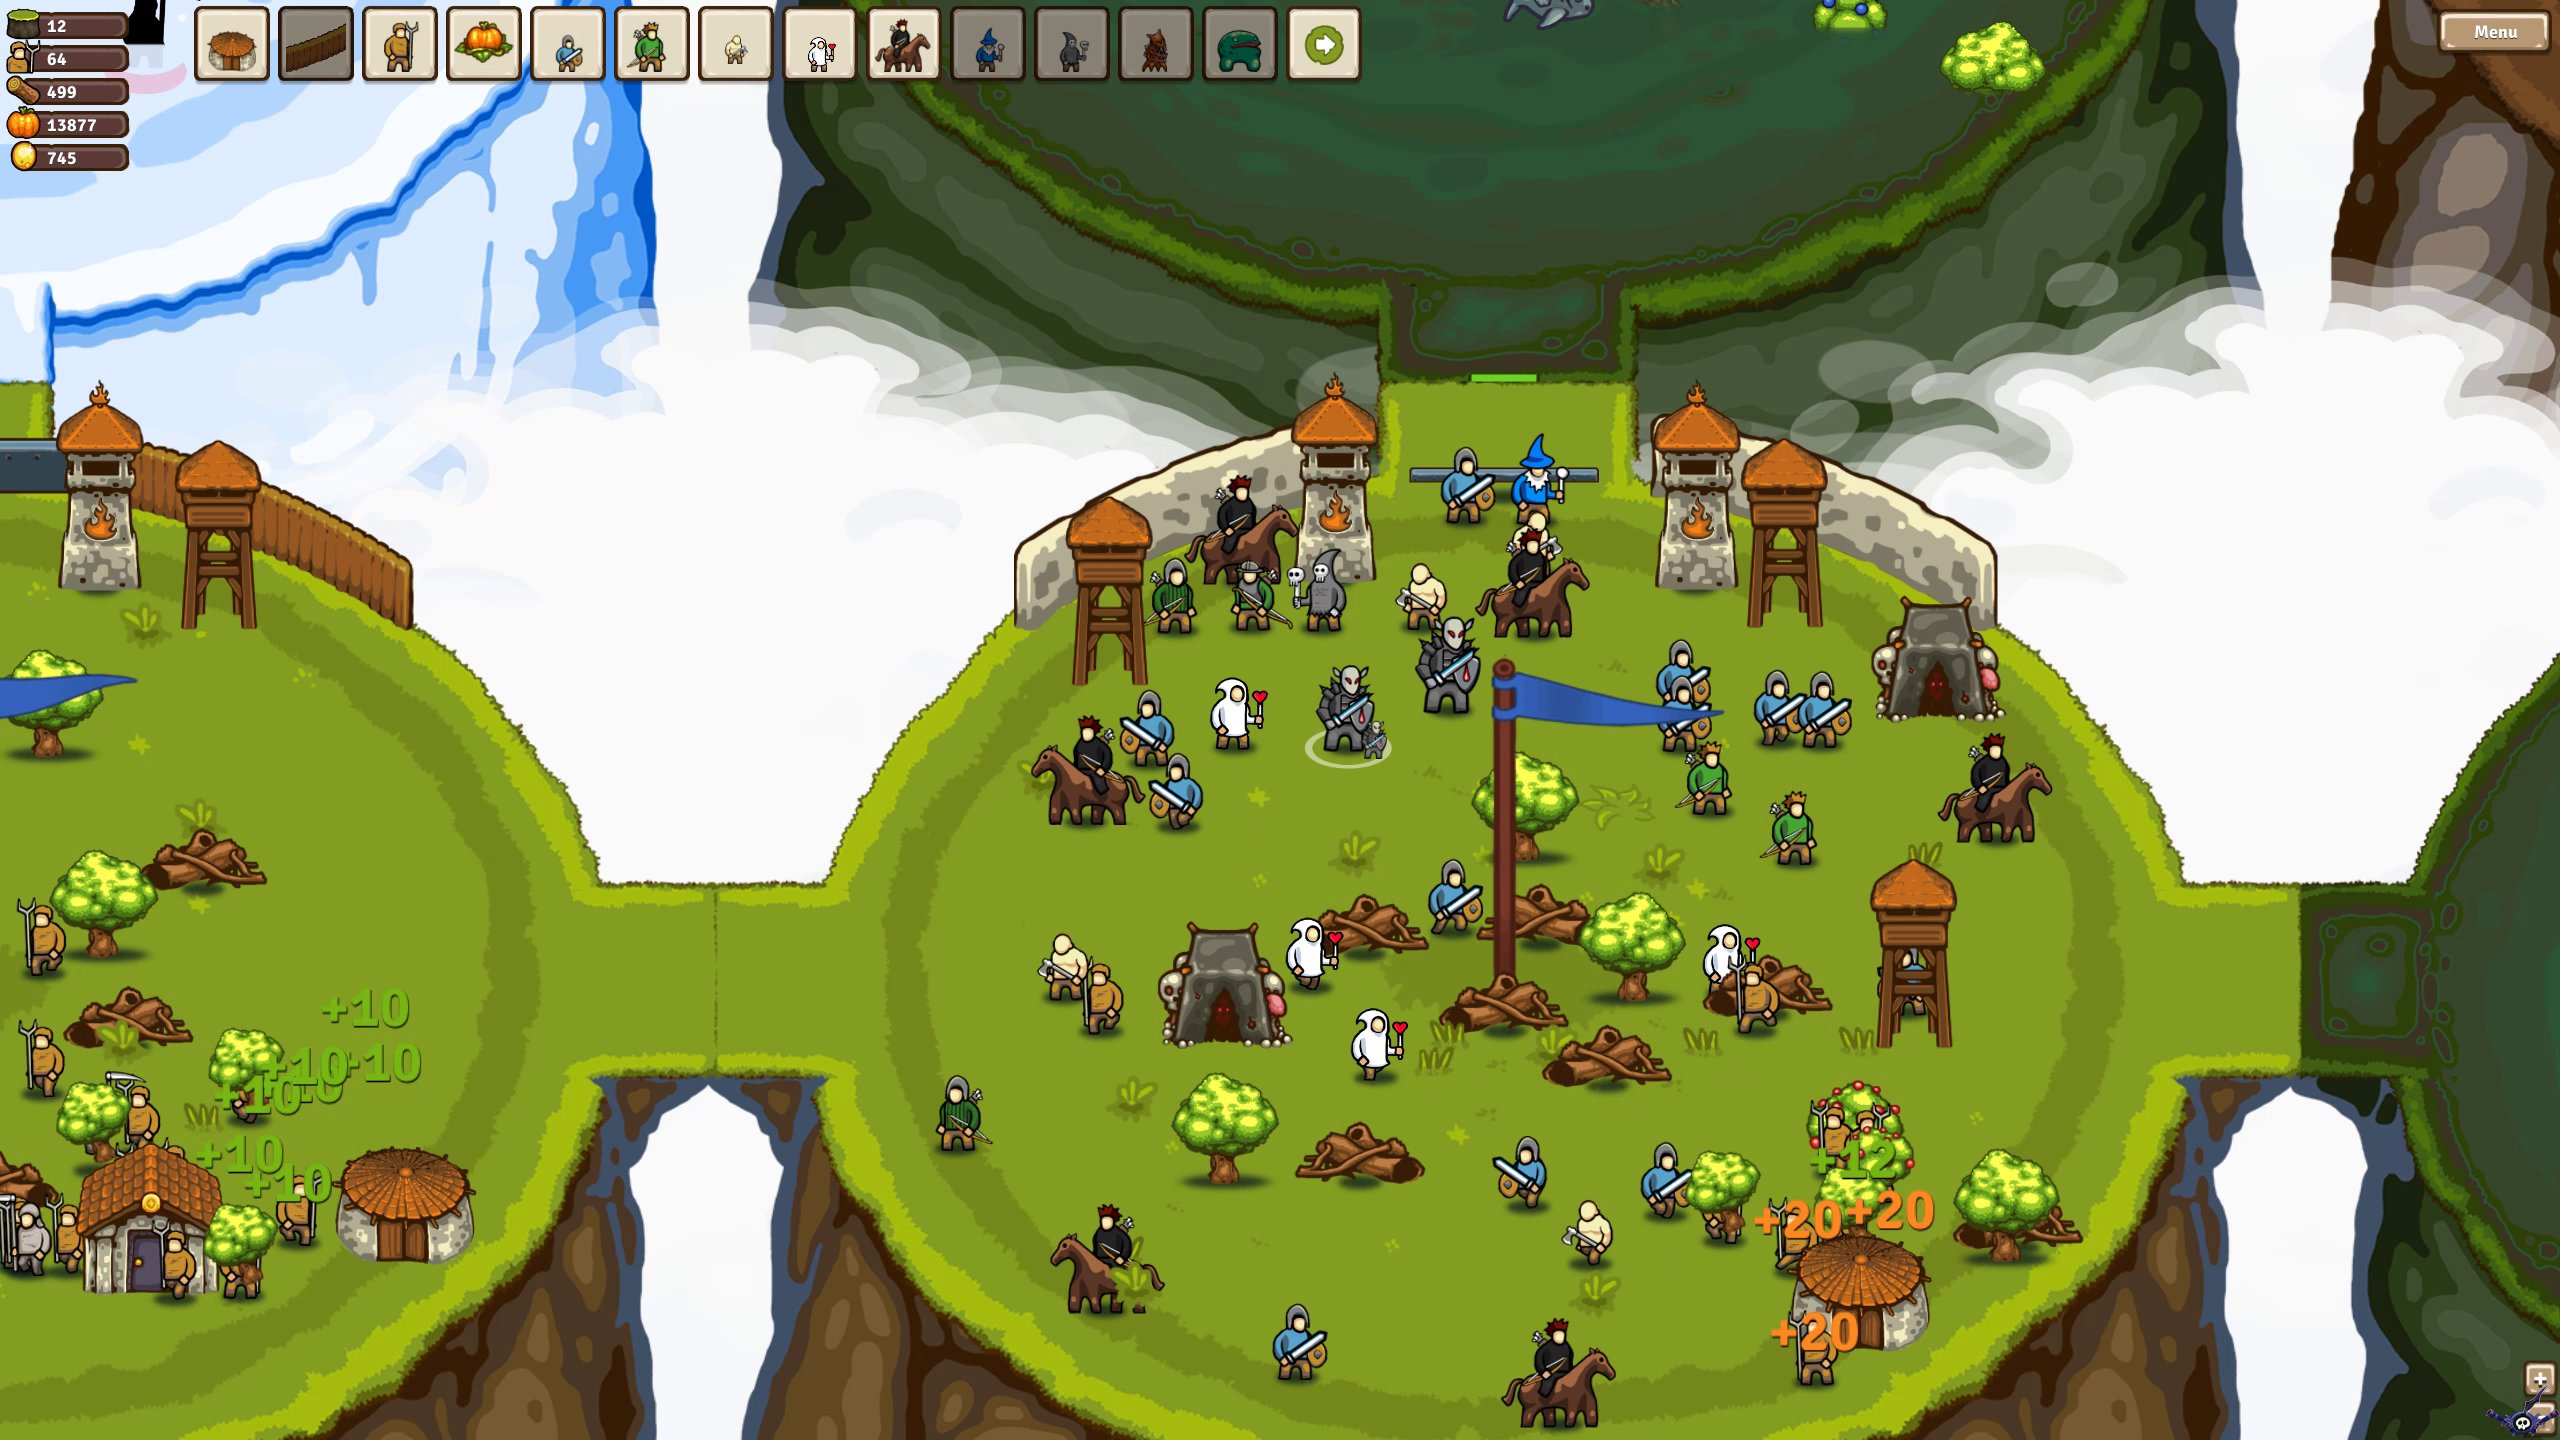 circle-empires-screenshot